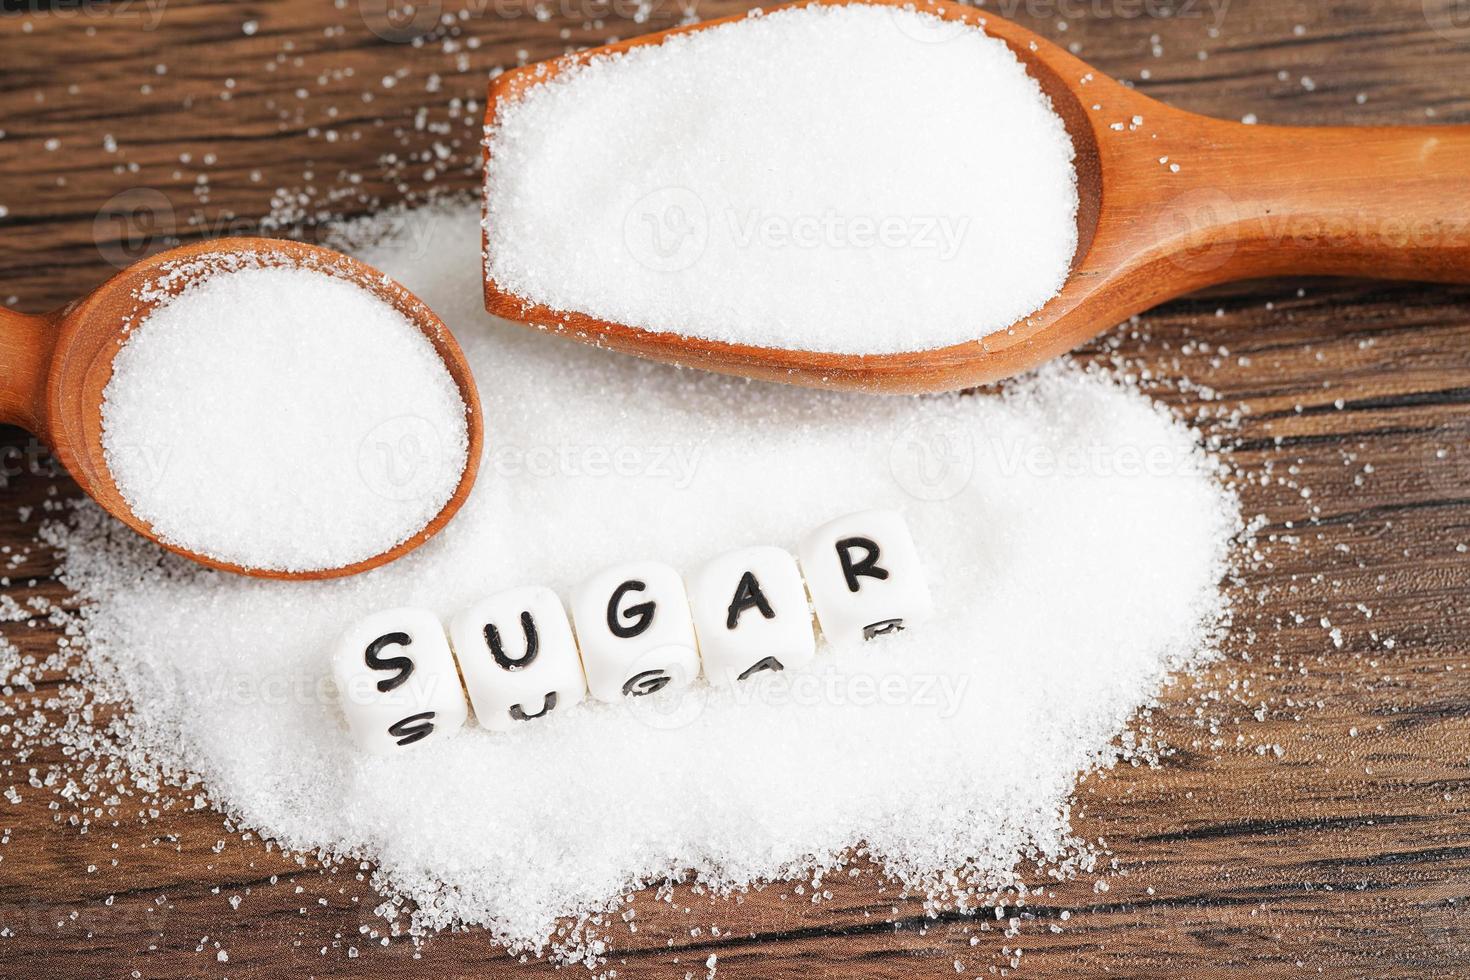 zucker, süßer granulierter zucker mit text, diabetesprävention, diät und gewichtsverlust für eine gute gesundheit. foto